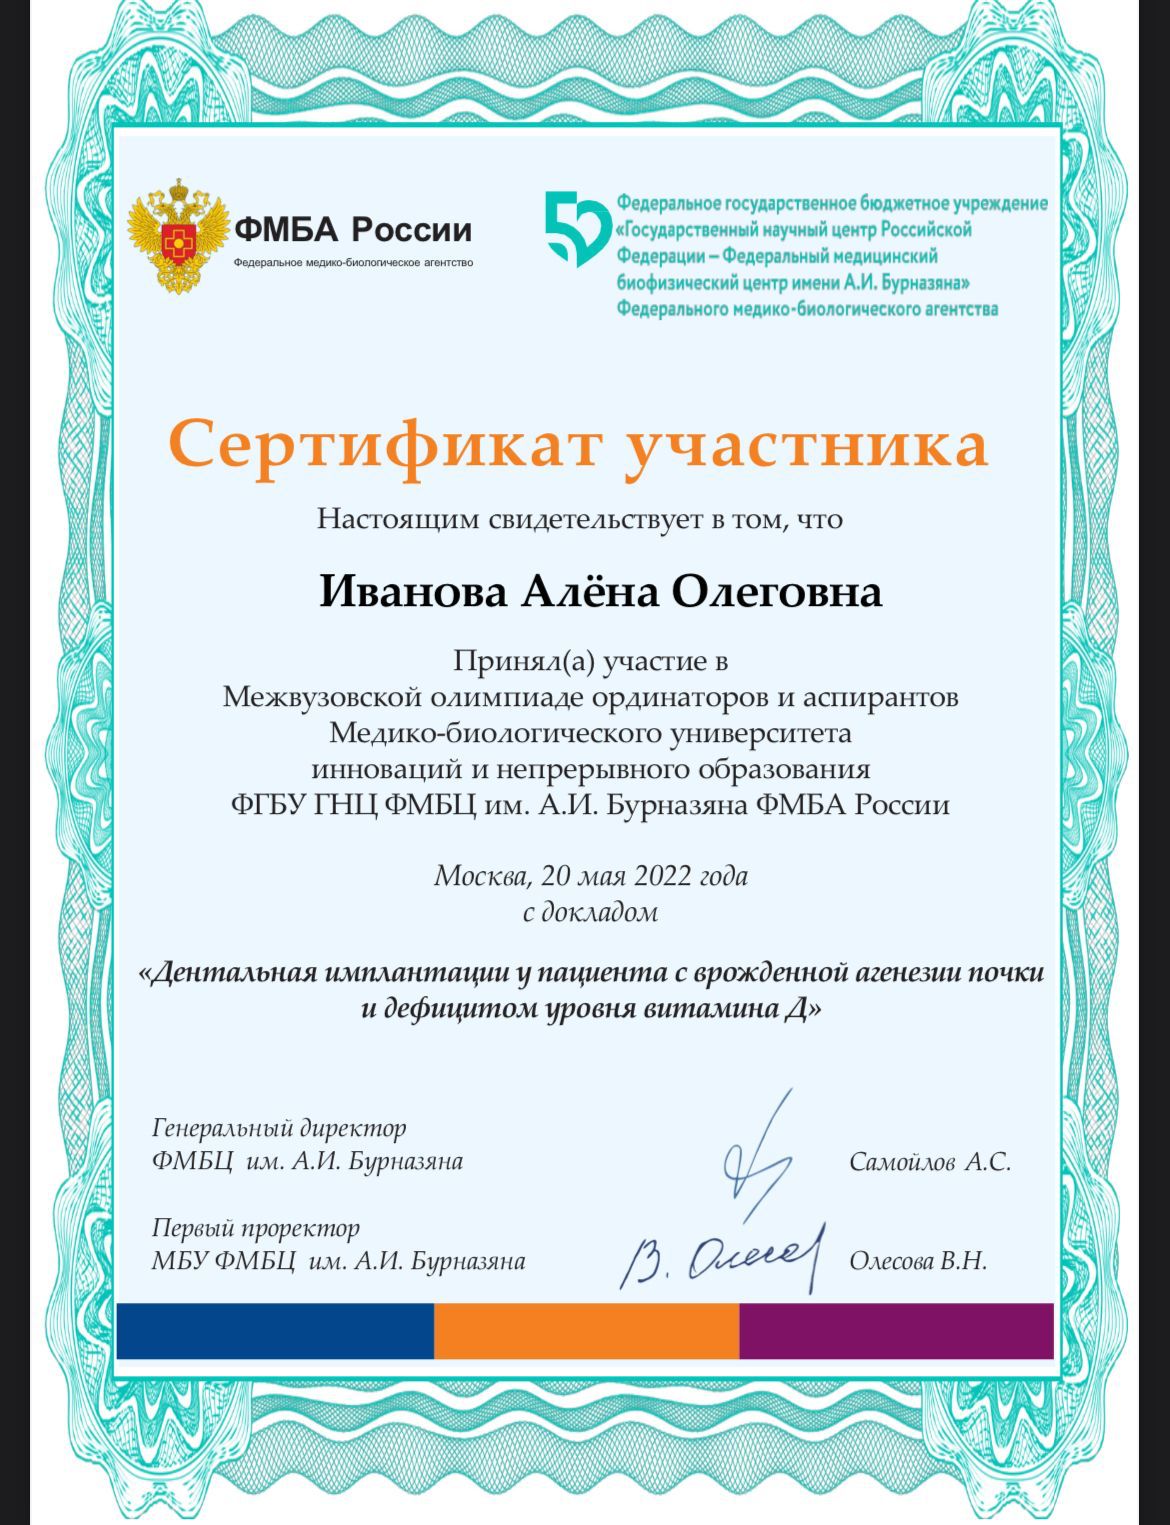 Сертификат 0 получил Алена Олеговна 